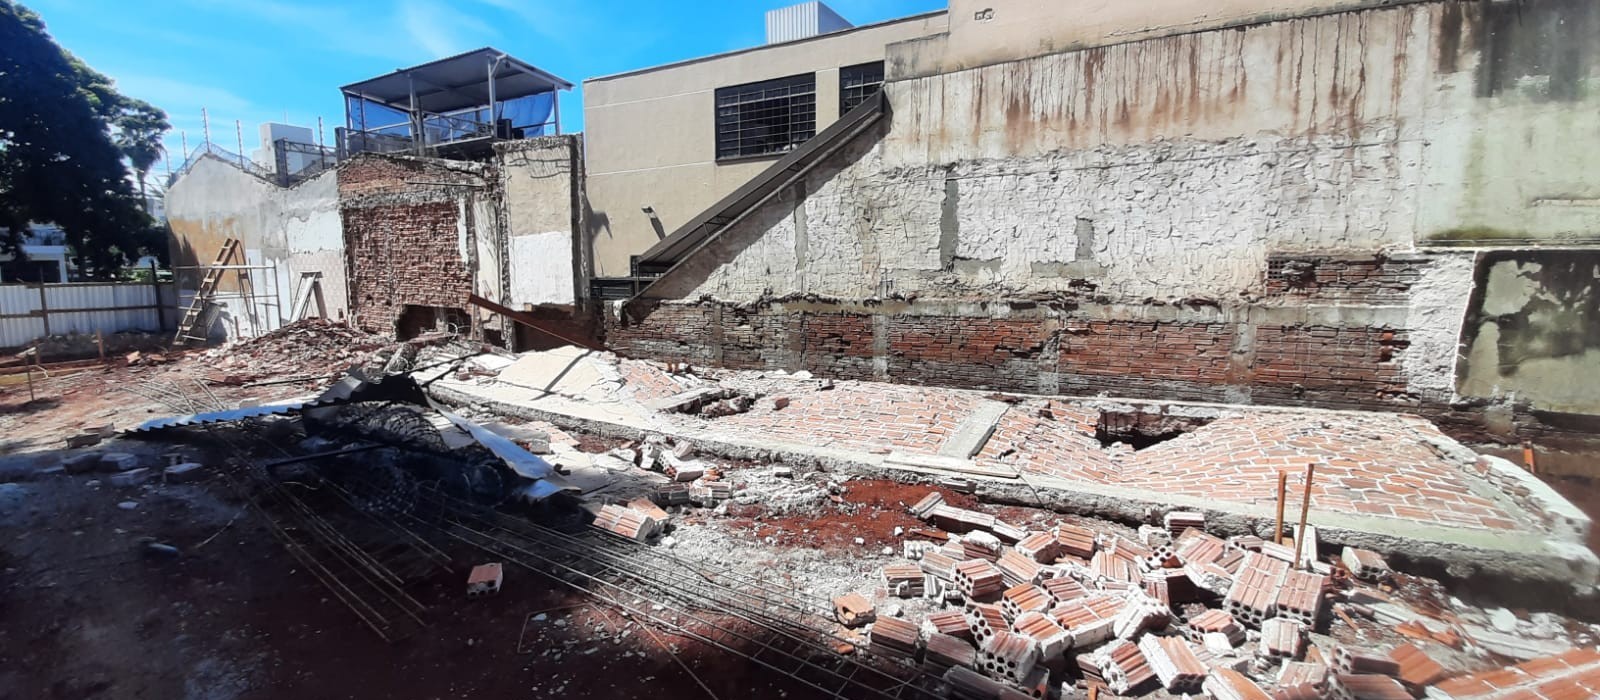 Muro cai sobre trabalhadores e dois ficam feridos em Maringá